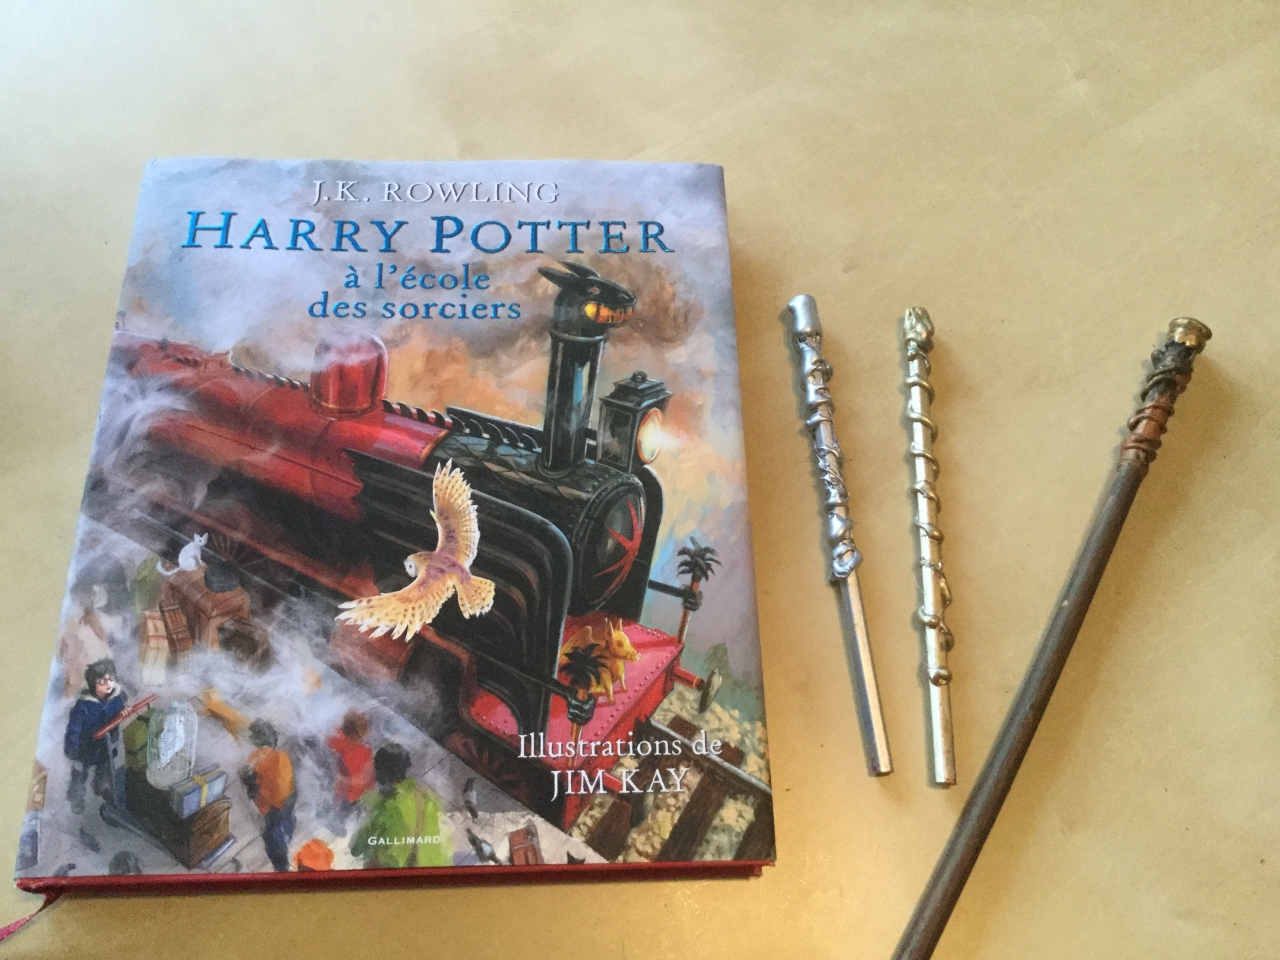 Harry Potter : un livre sur les baguettes magiques va sortir !